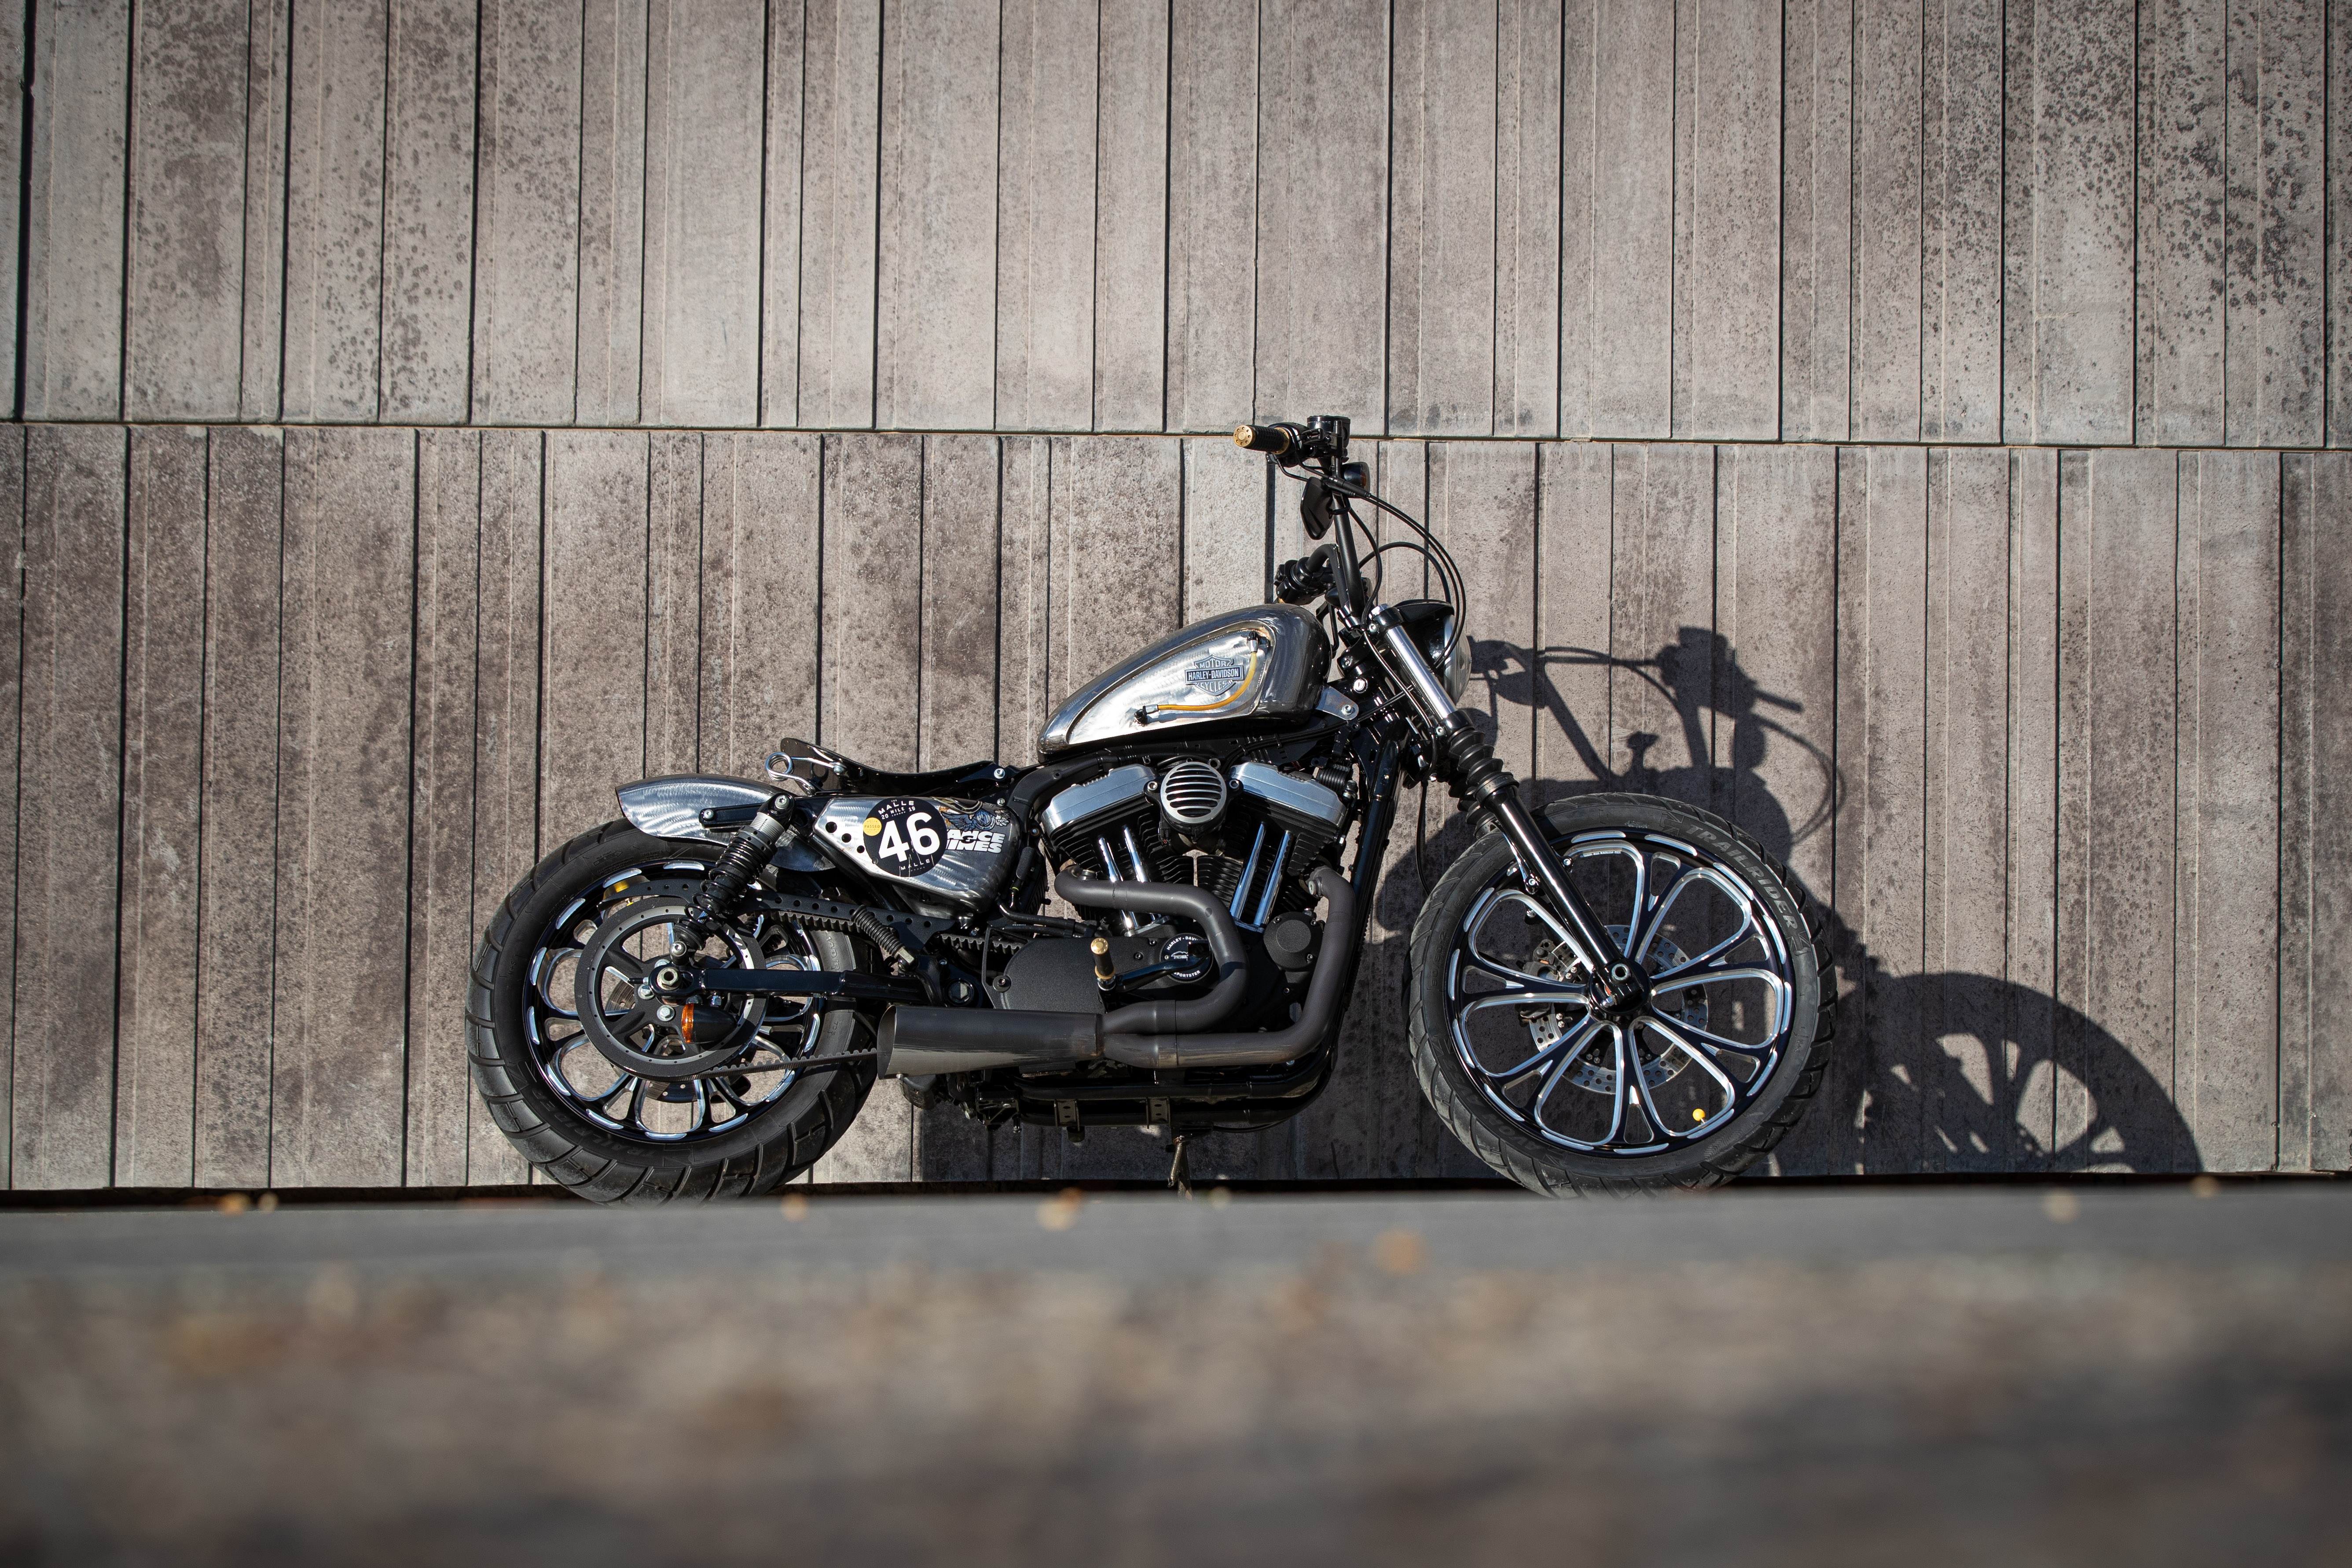 Ngam dan xe Harley-Davidson Sportster lot xac voi ban do Sykes hinh anh 2 2020_Harley_Davidson_Sportster_Custom_5313.jpg